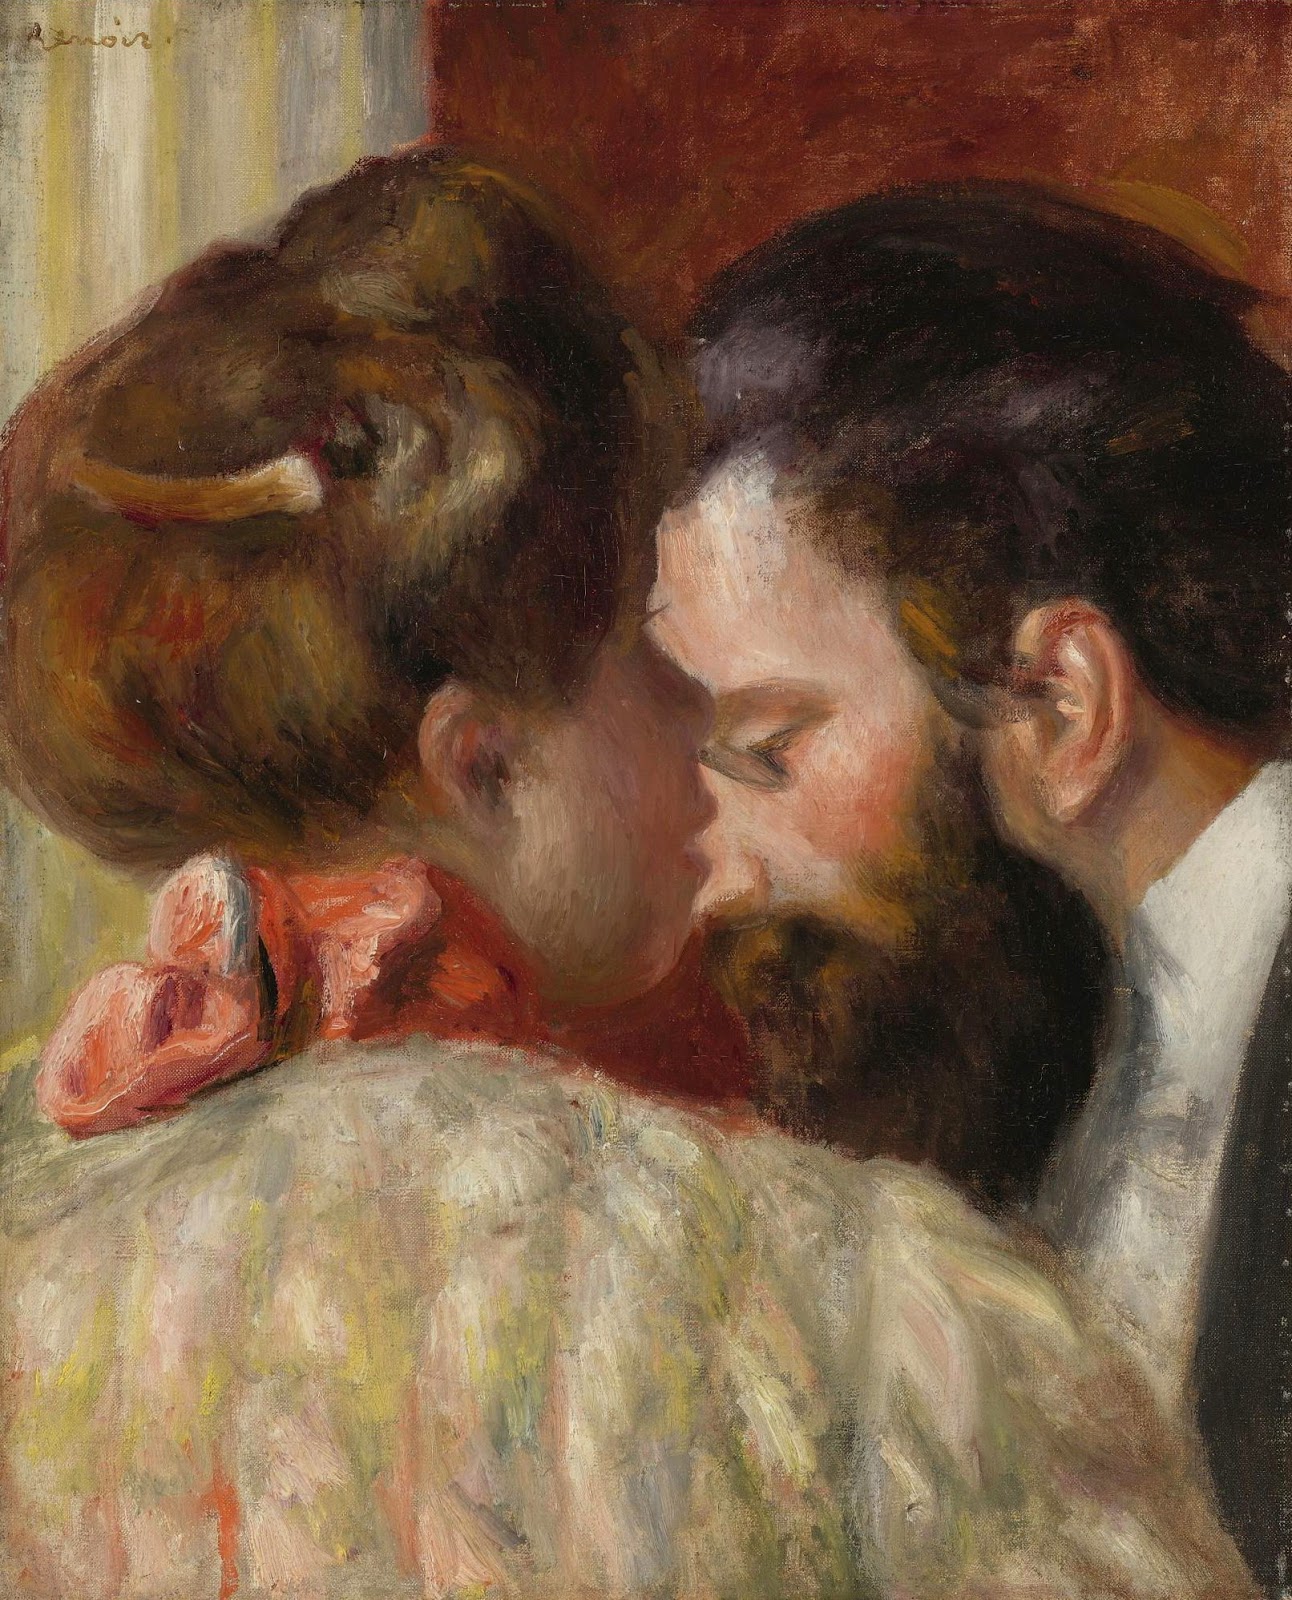 Pierre+Auguste+Renoir-1841-1-19 (808).jpg